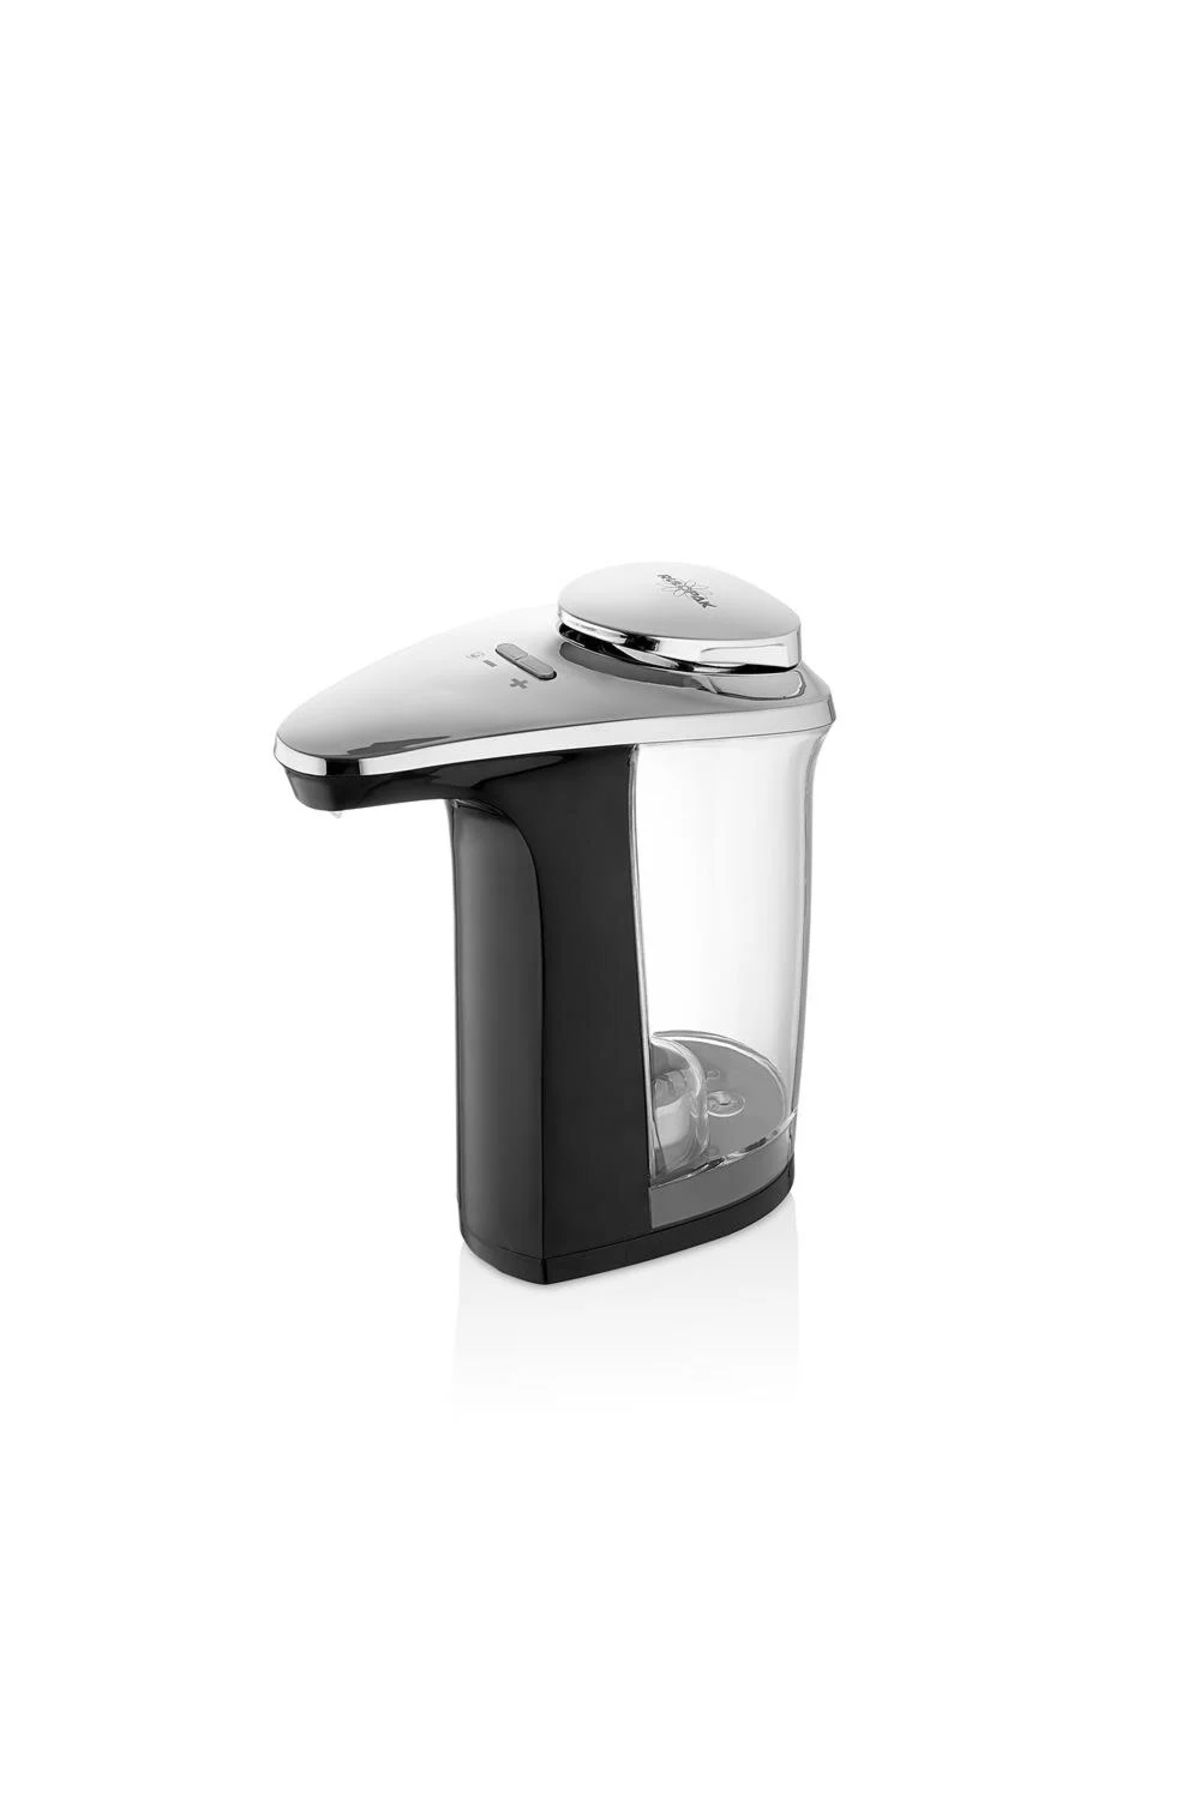 Rulopak Elit Tezgahüstü Sensörlü Sıvı Dispenseri 400 ml Tenorit Gri